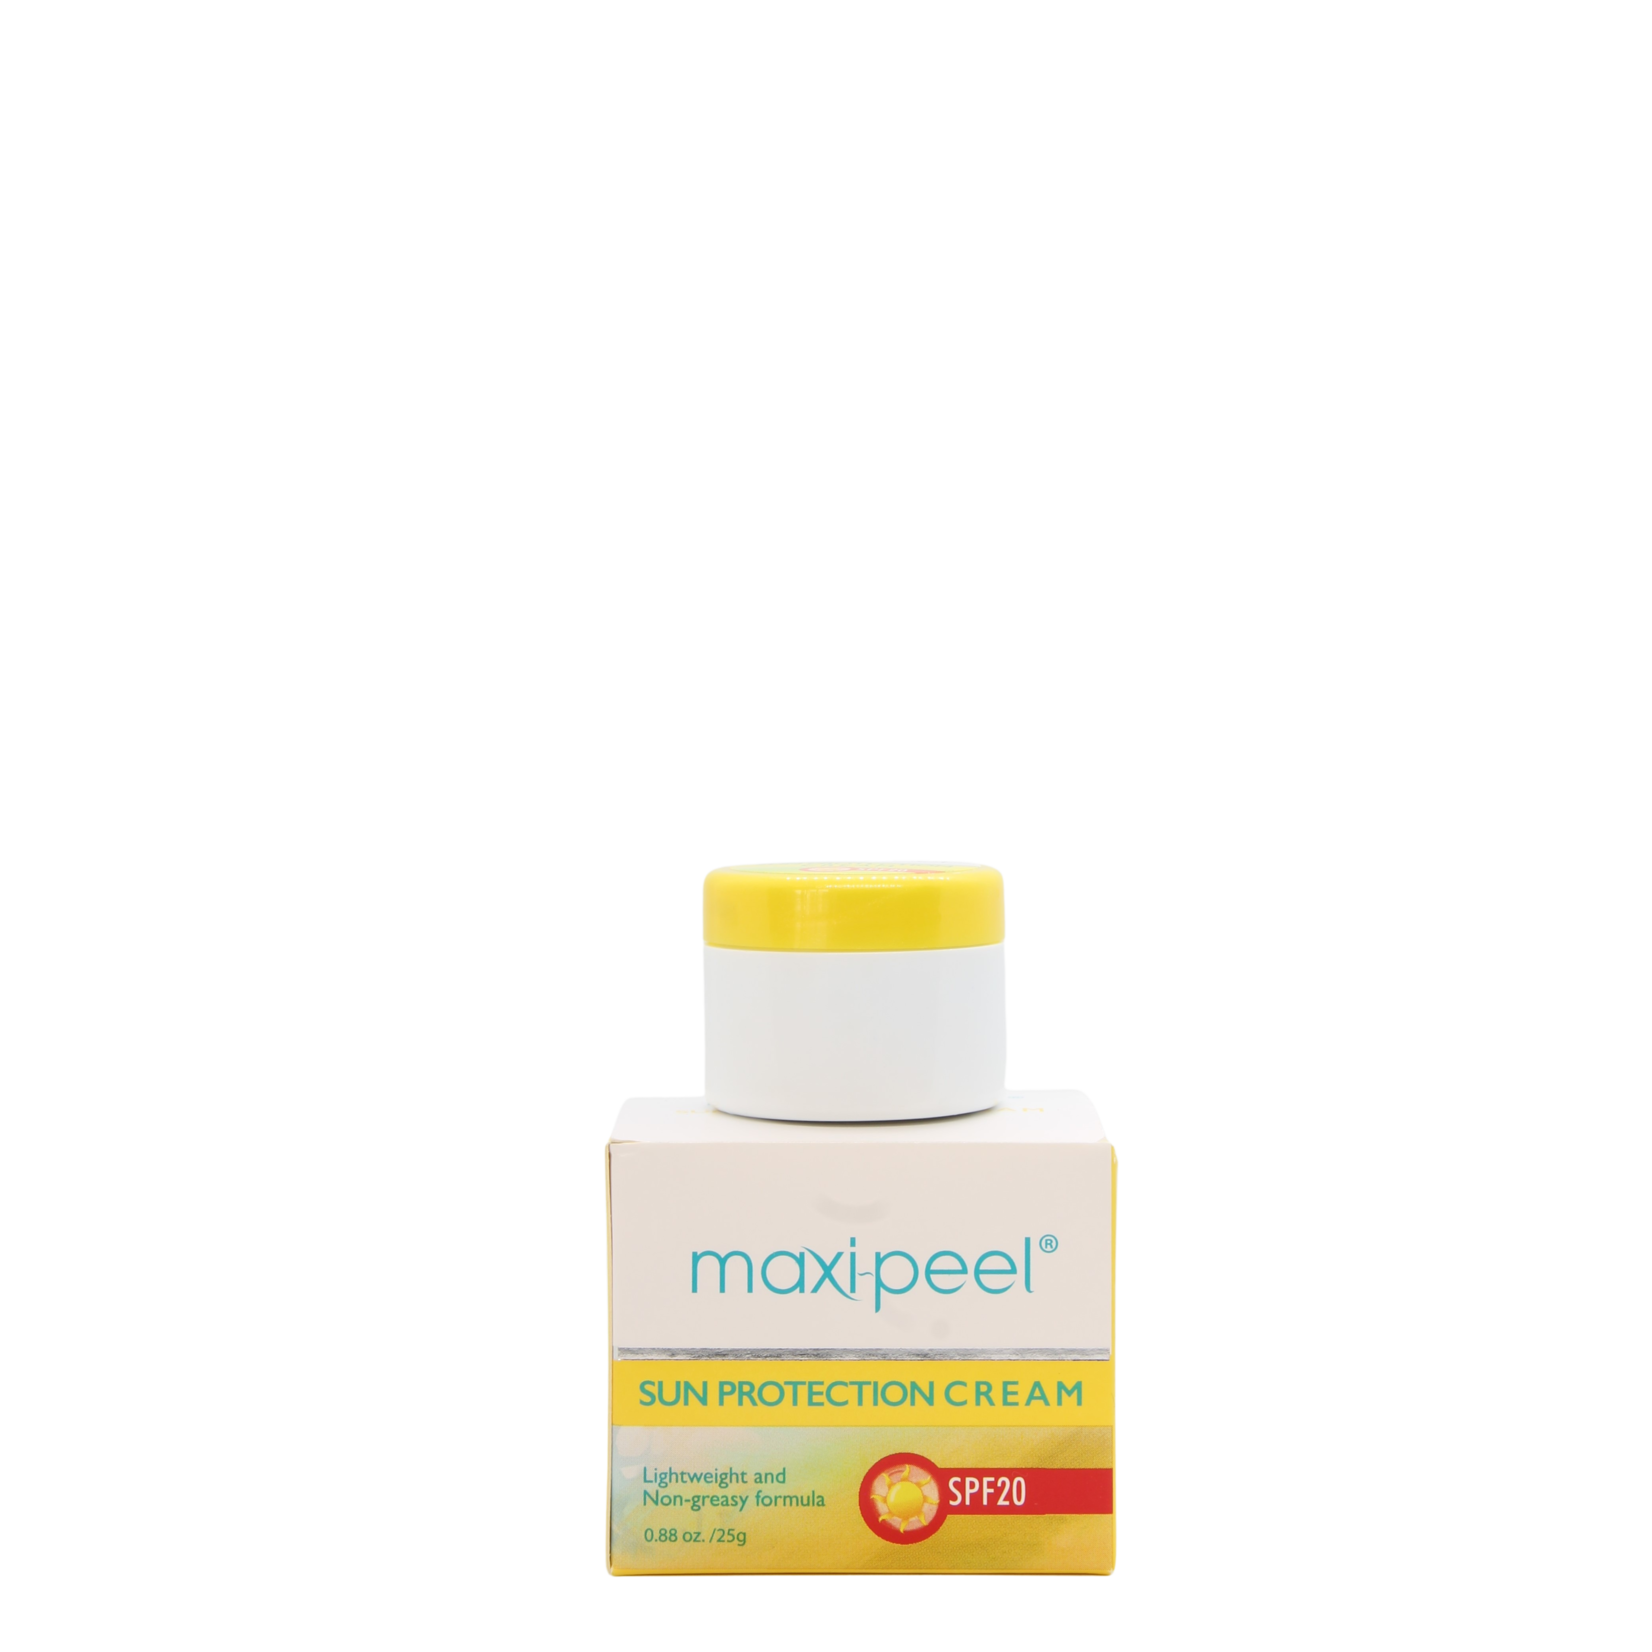 Maxi-Peel, biedt een passend product voor al jouw huidbehoeften! Maxi-Peel zonnebrand crème  SPF20 , 25gr